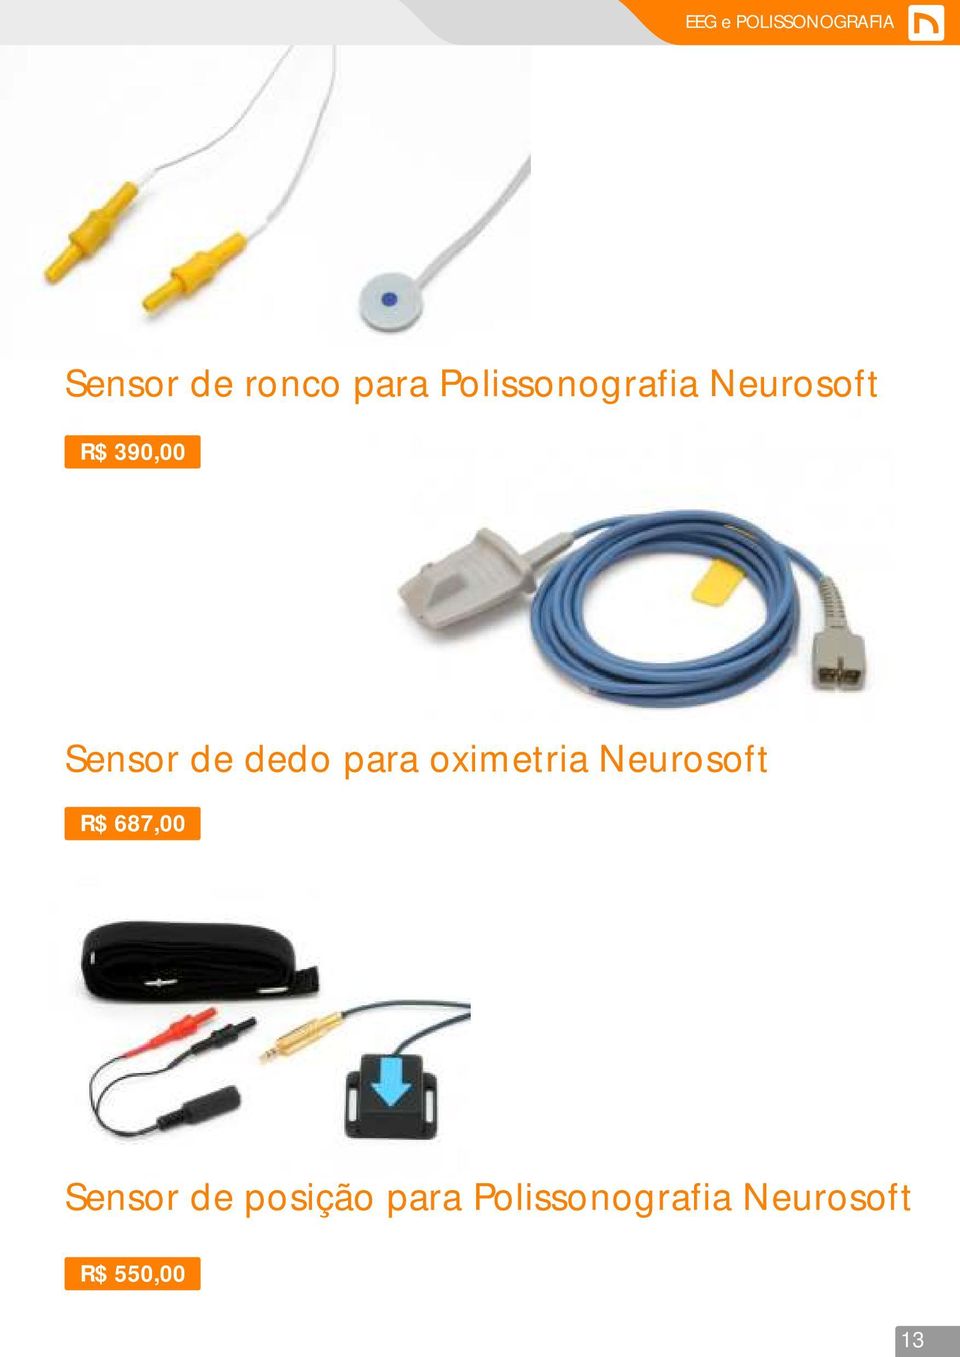 dedo para oximetria Neurosoft R$ 687,00 Sensor